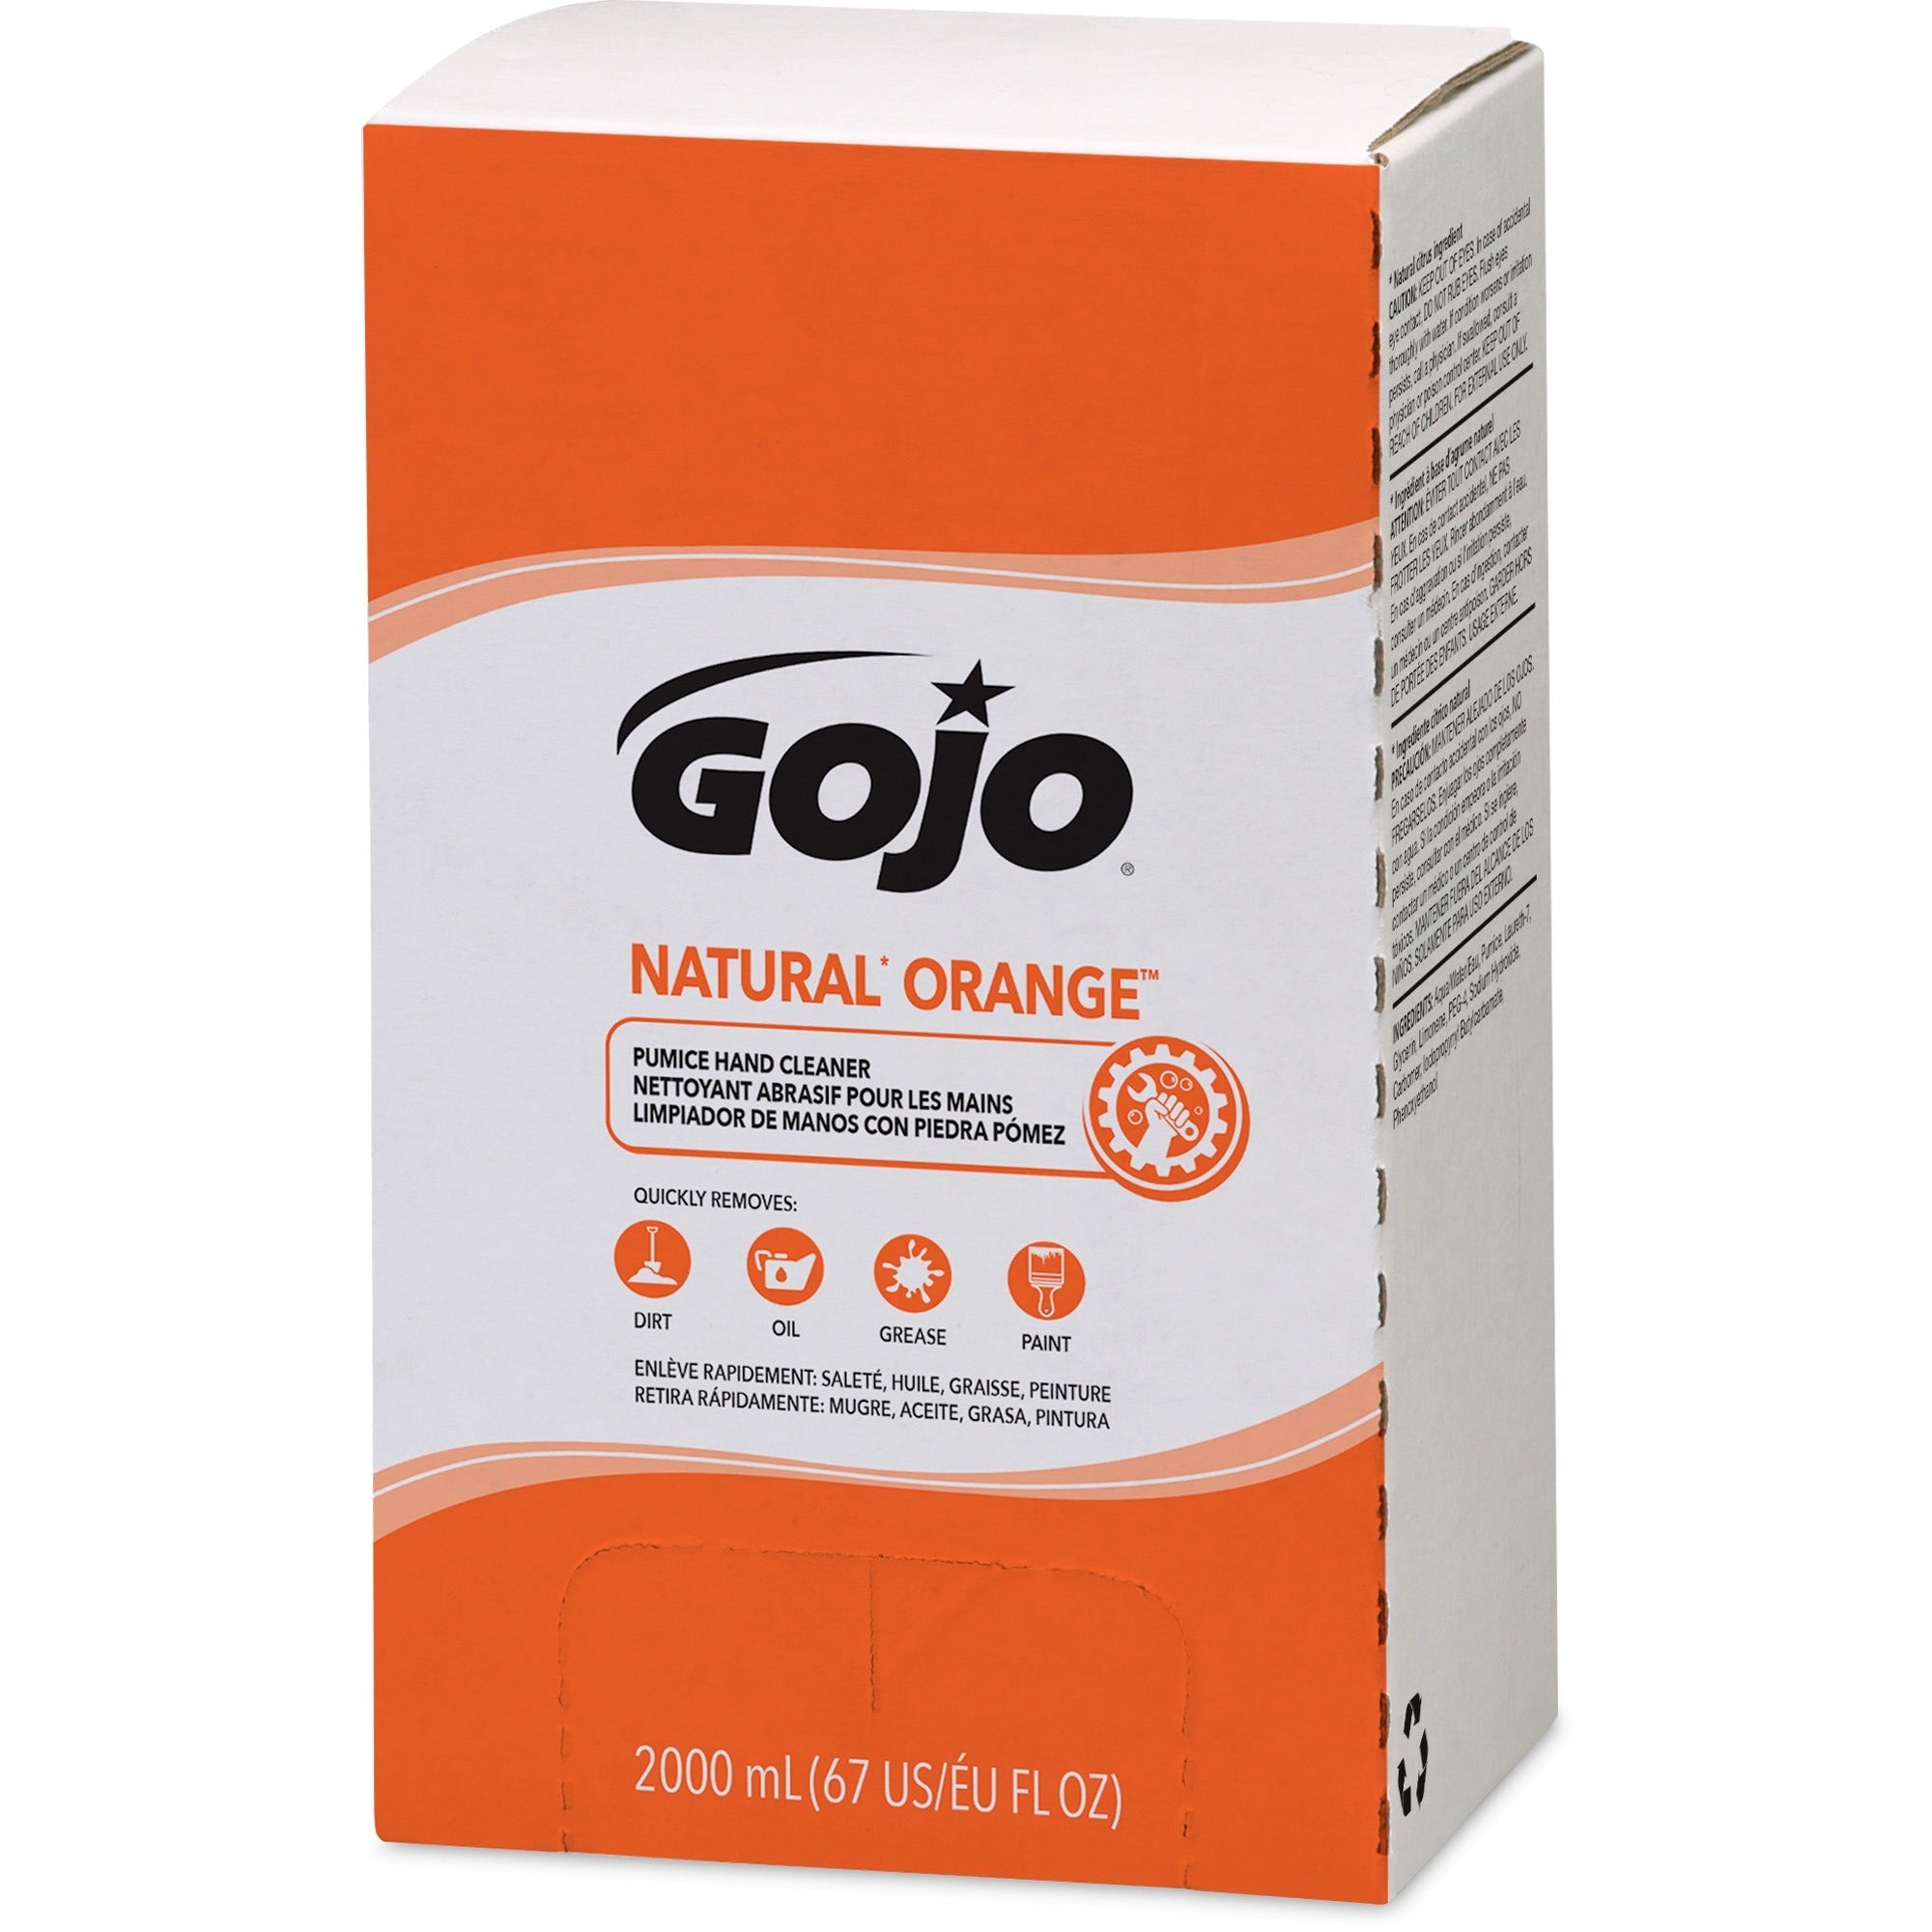 gojo-natural-orange-pumice-hand-cleaner-refill-orange-citrus-scentfor-676-fl-oz-2-l-dirt-remover-grease-remover-soilage-remover-hand-gray-4-carton_goj725504 - 3